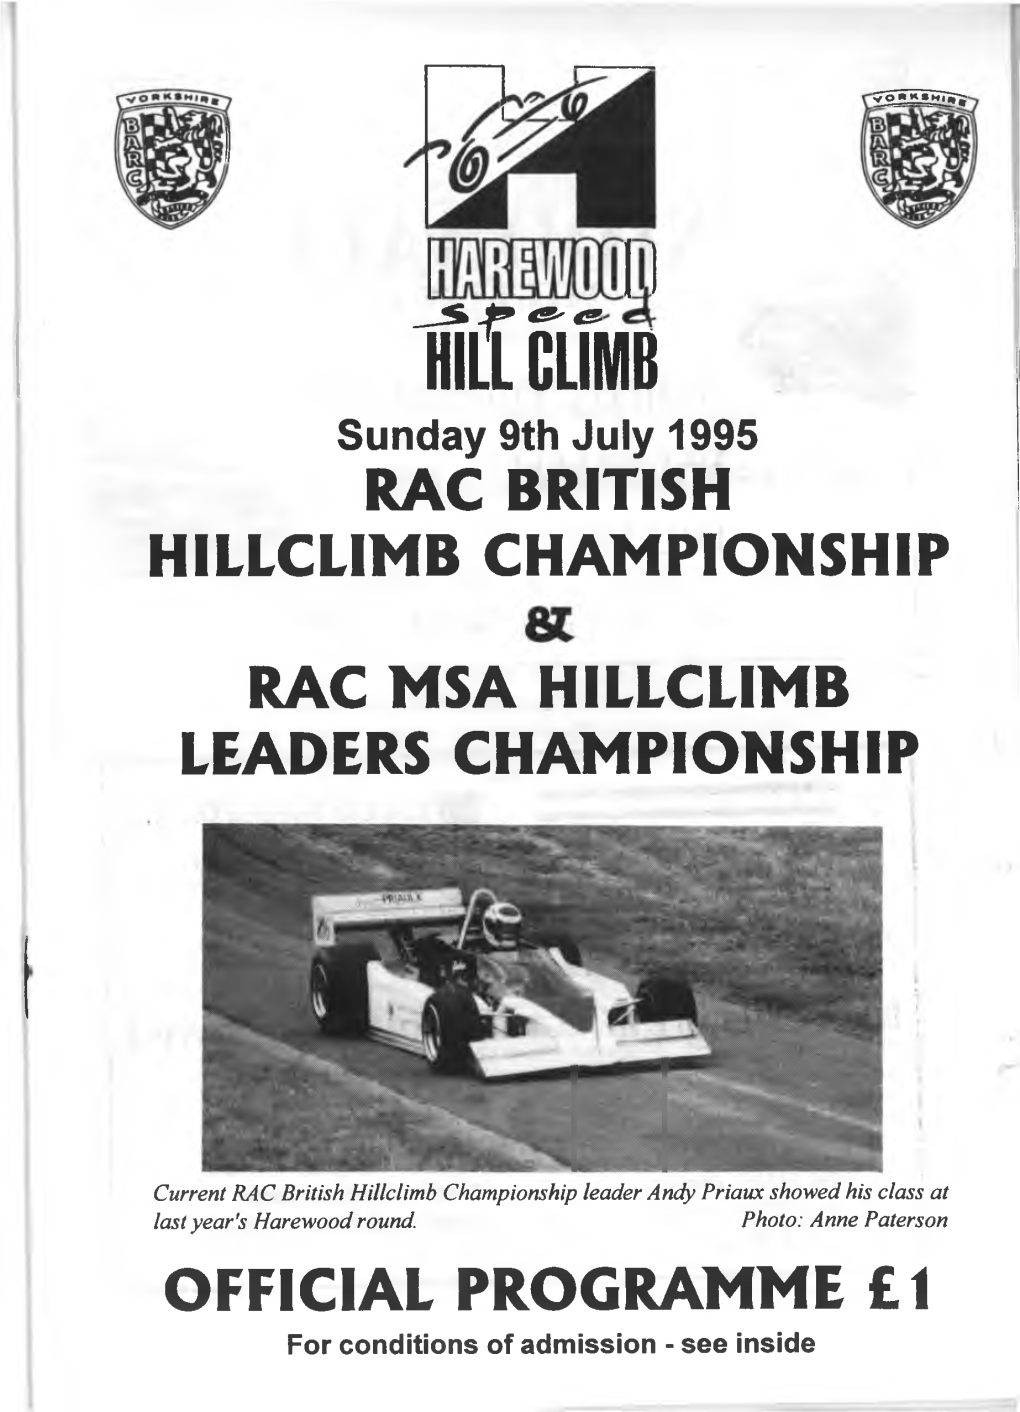 Hill CLIMB RAC BRITISH HILLCLIMB CHAMPIONSHIP RAC MSA